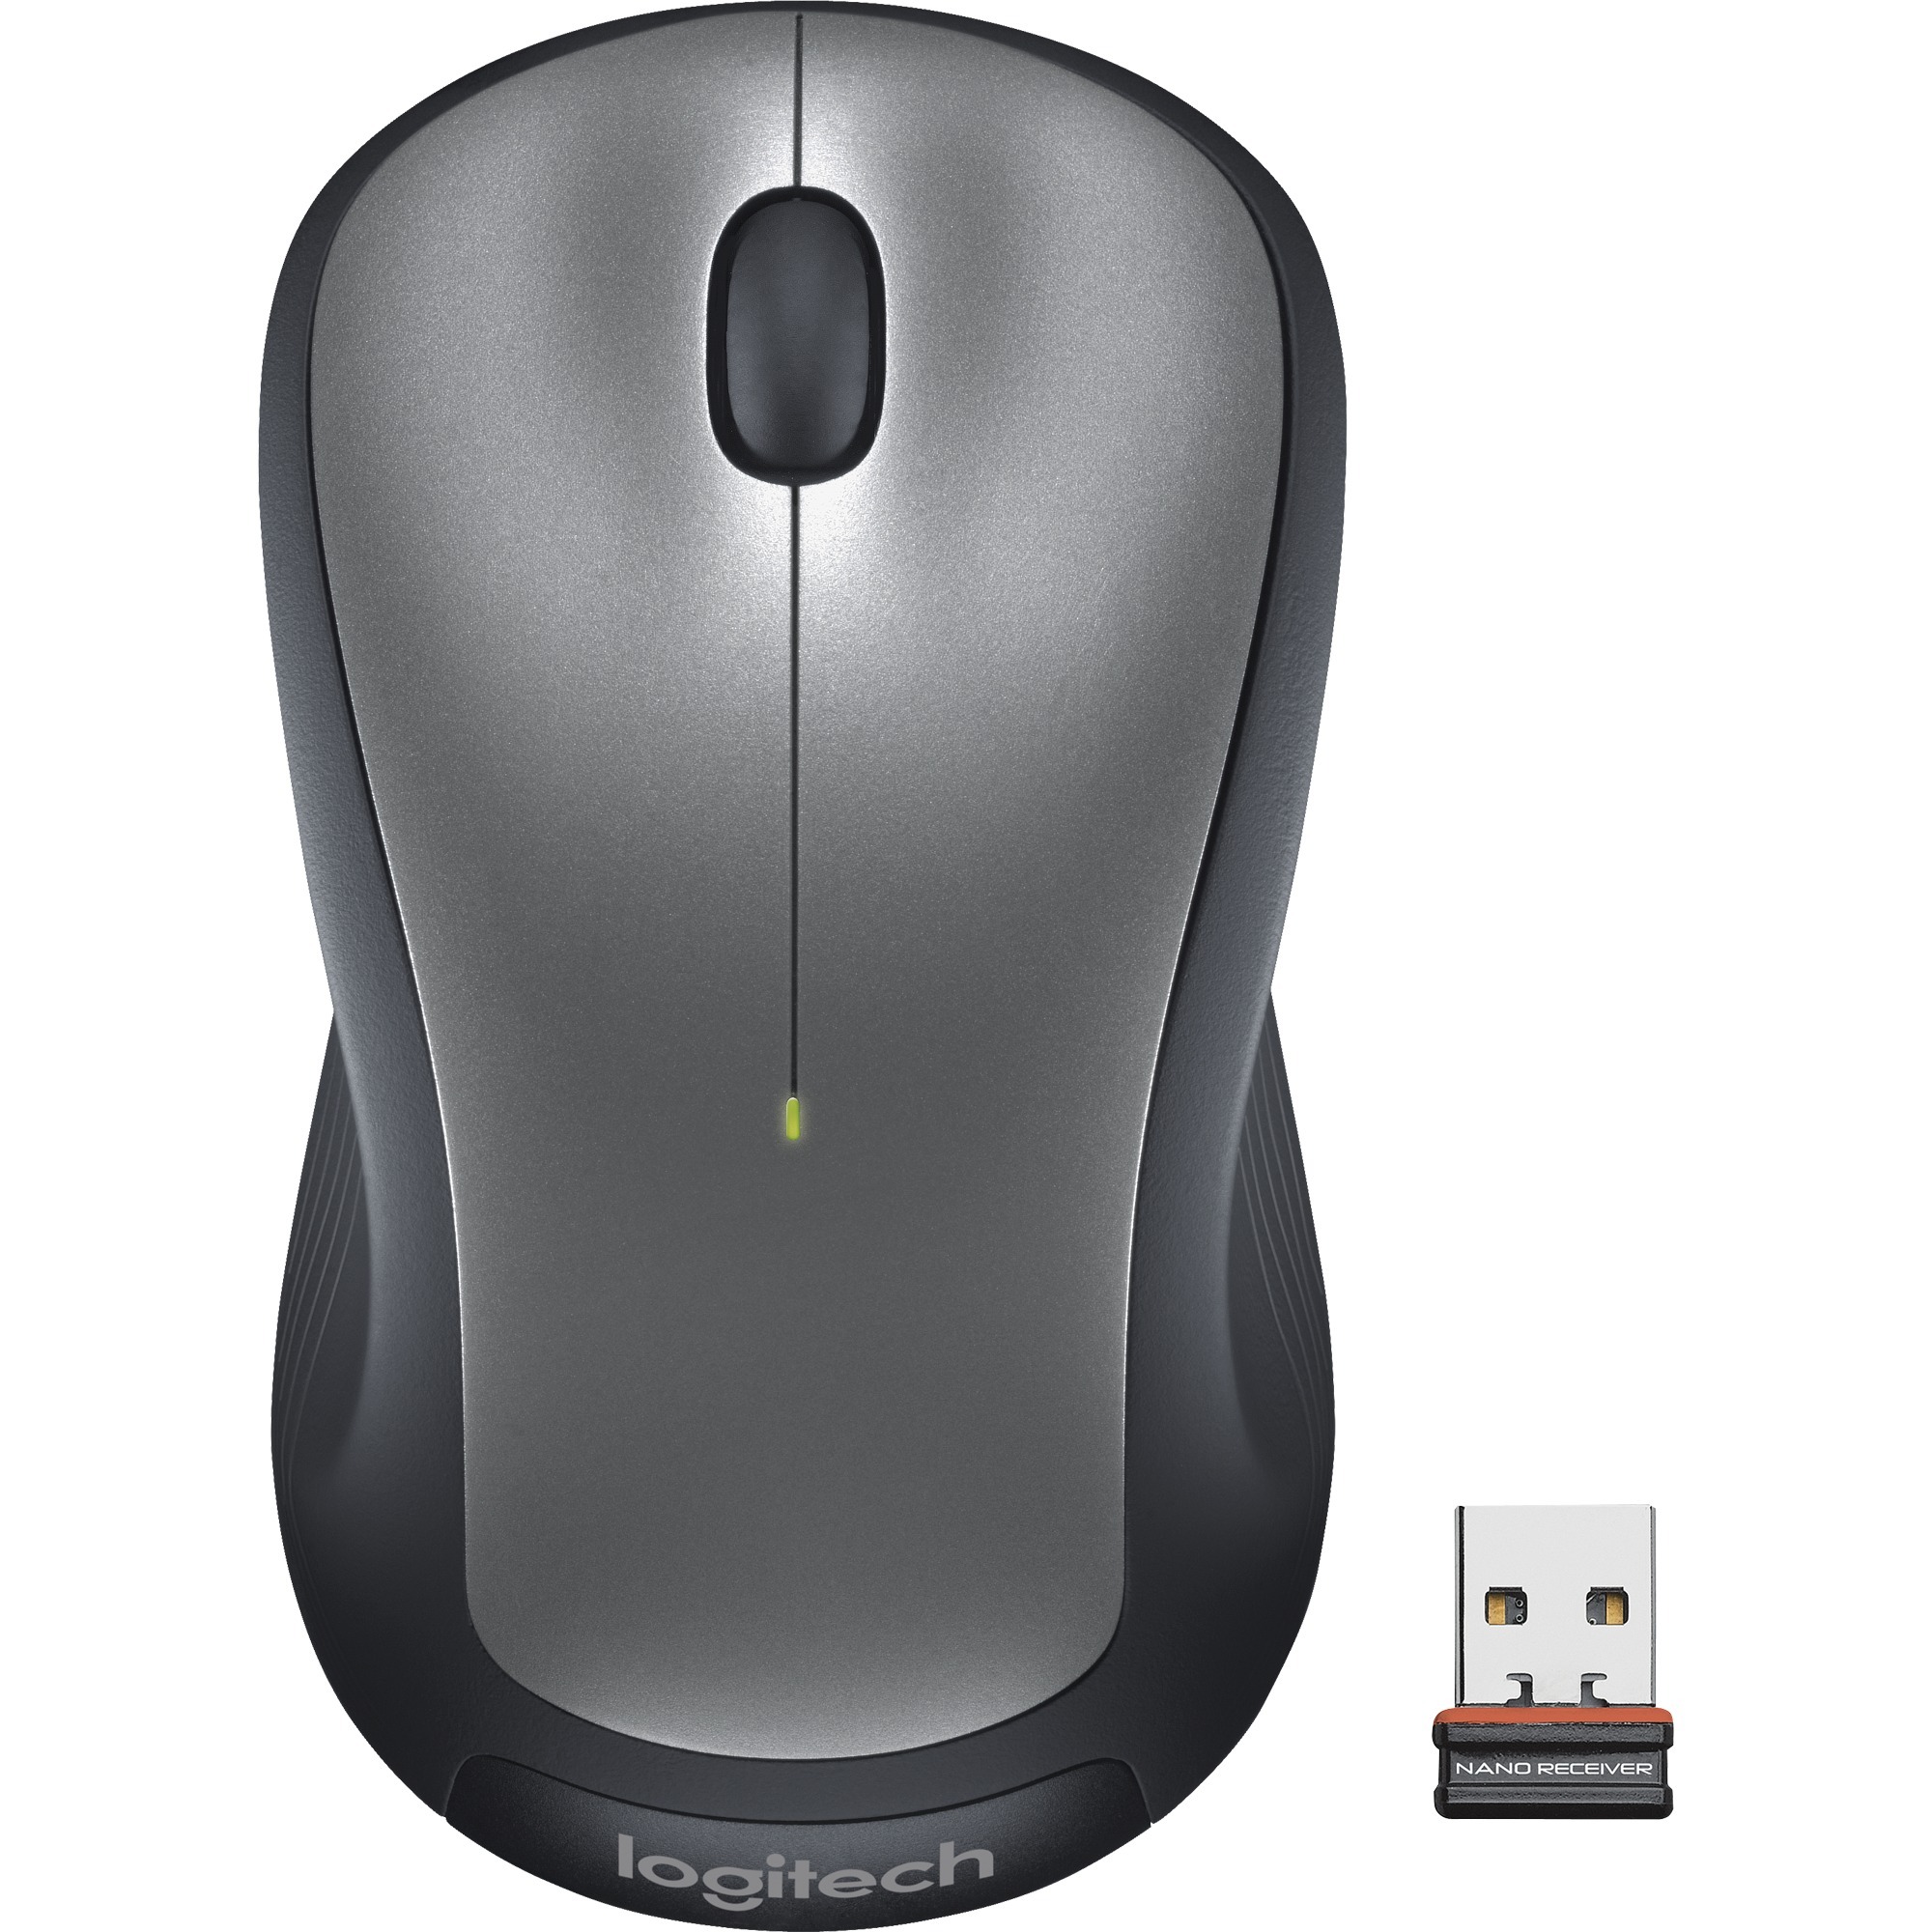 Image of Alternate - Wireless Mouse M310, Maus online einkaufen bei Alternate